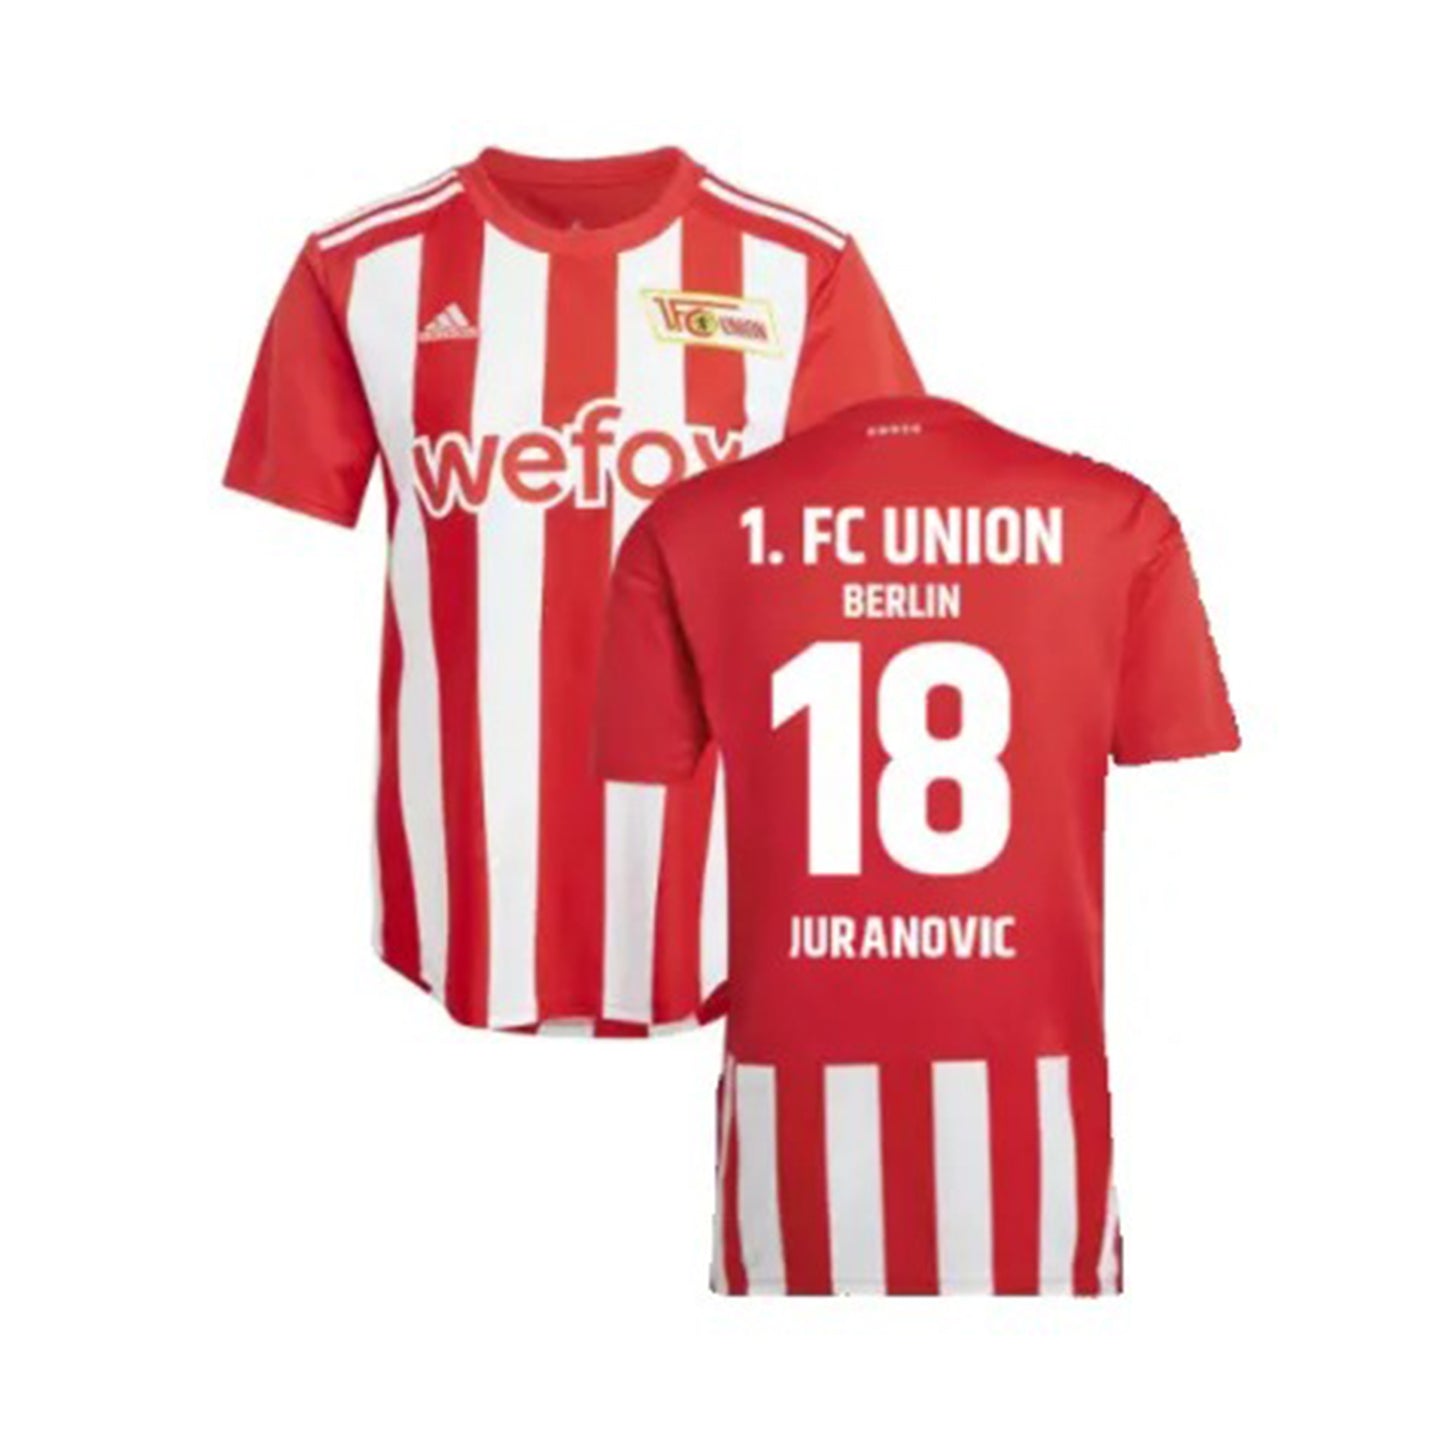 Josip Juranović FC Union Berlin 18 Jersey